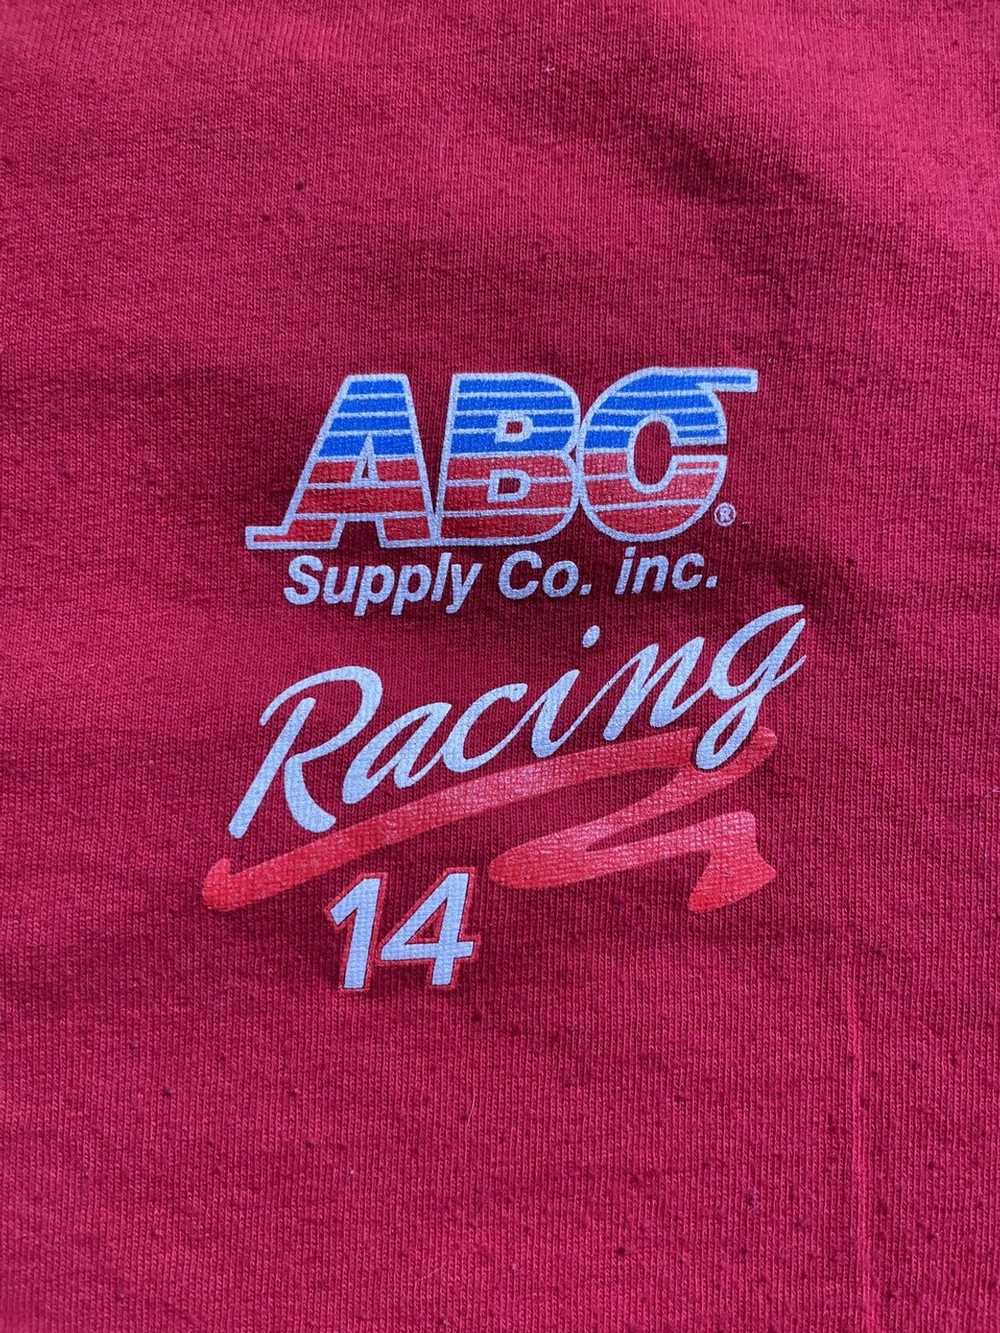 Jerzees SIGNED Aj Foyt ABC Supply co inc. shirt - image 2